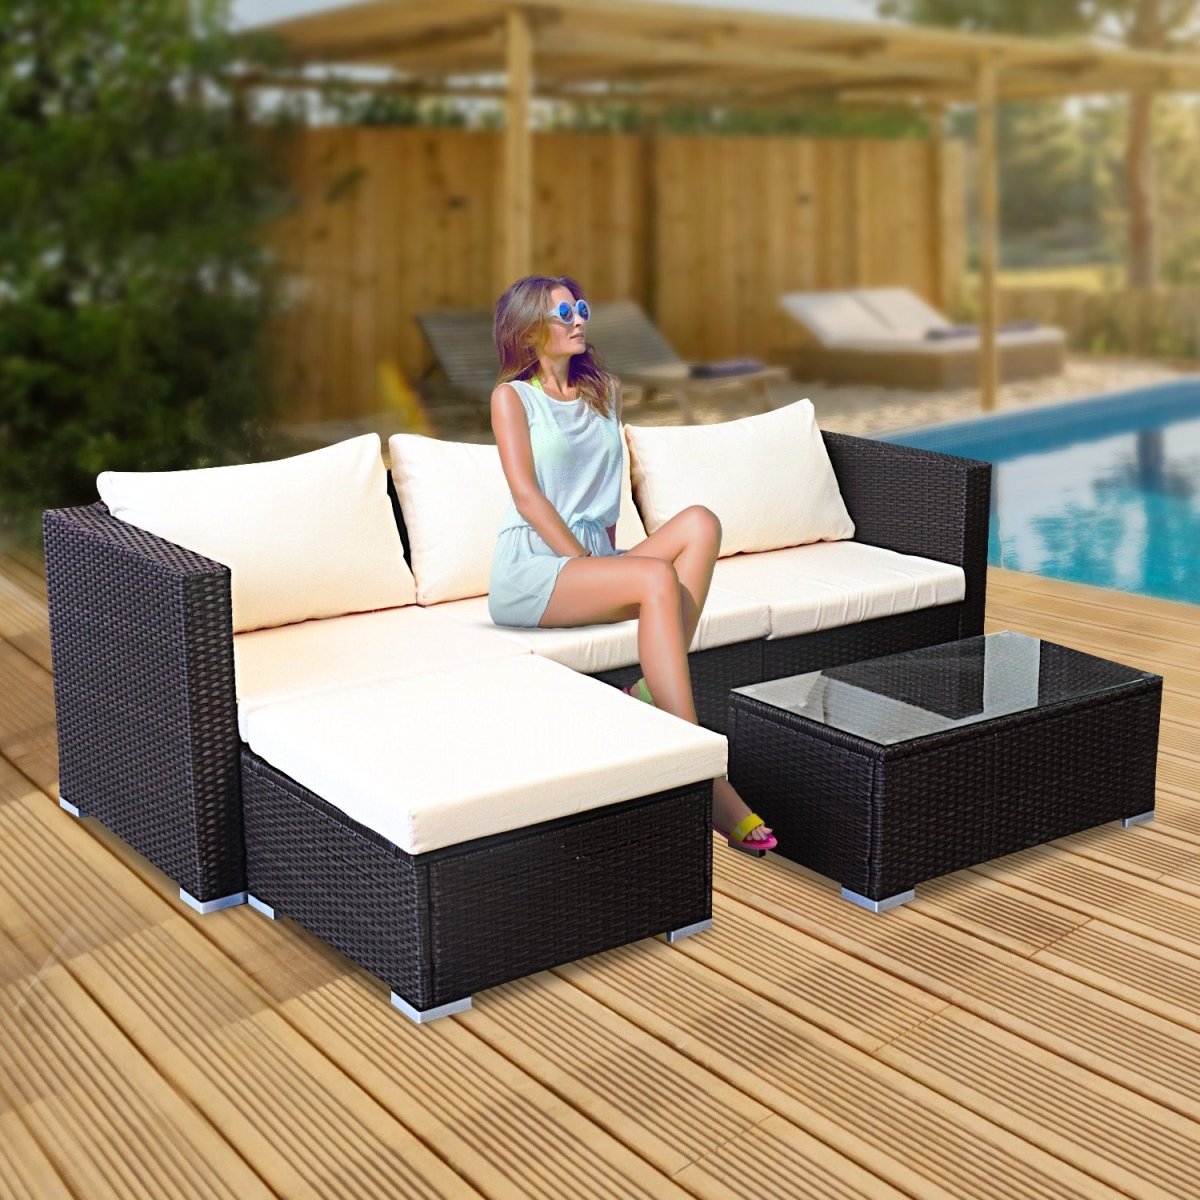 Sarantino 5pc Modular Outdoor Lounge Set PE Rattan - Brown - Outdoorium